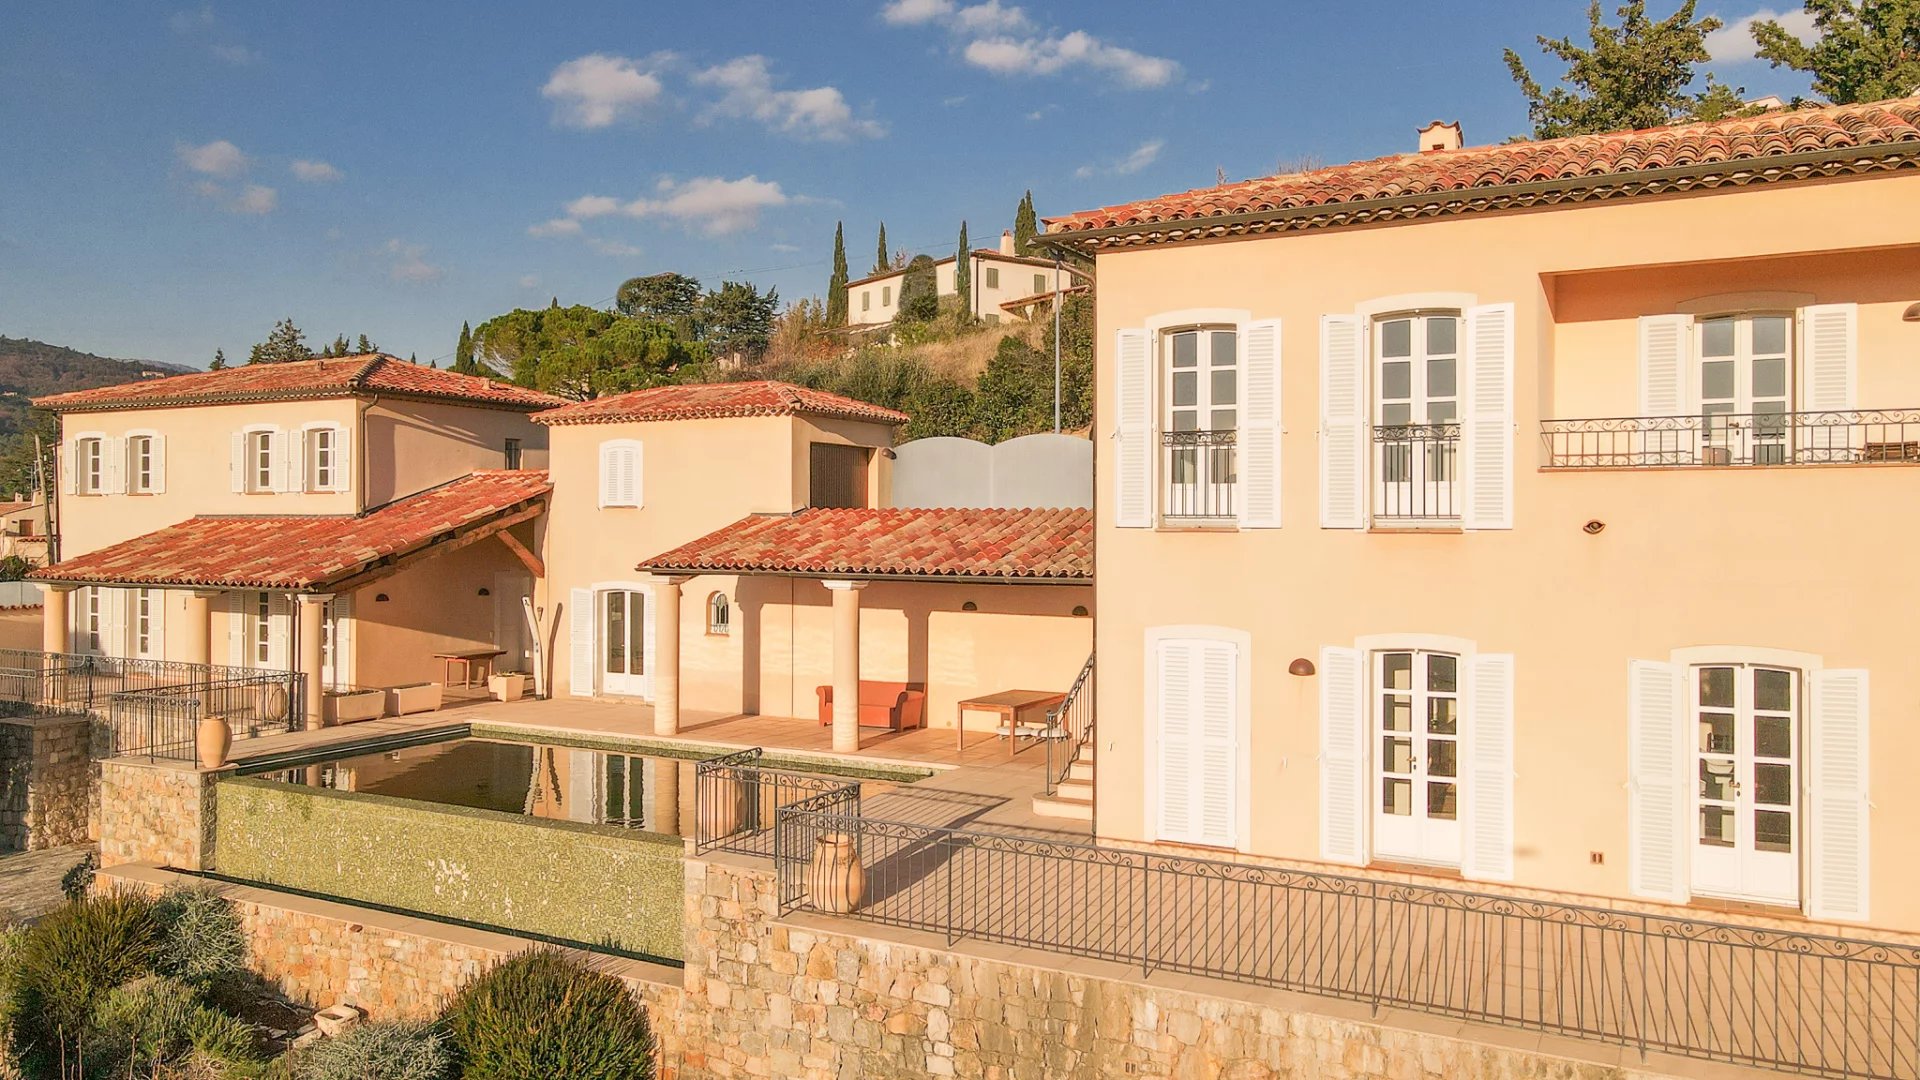 Provence grote veilige dorps villa met zwembad